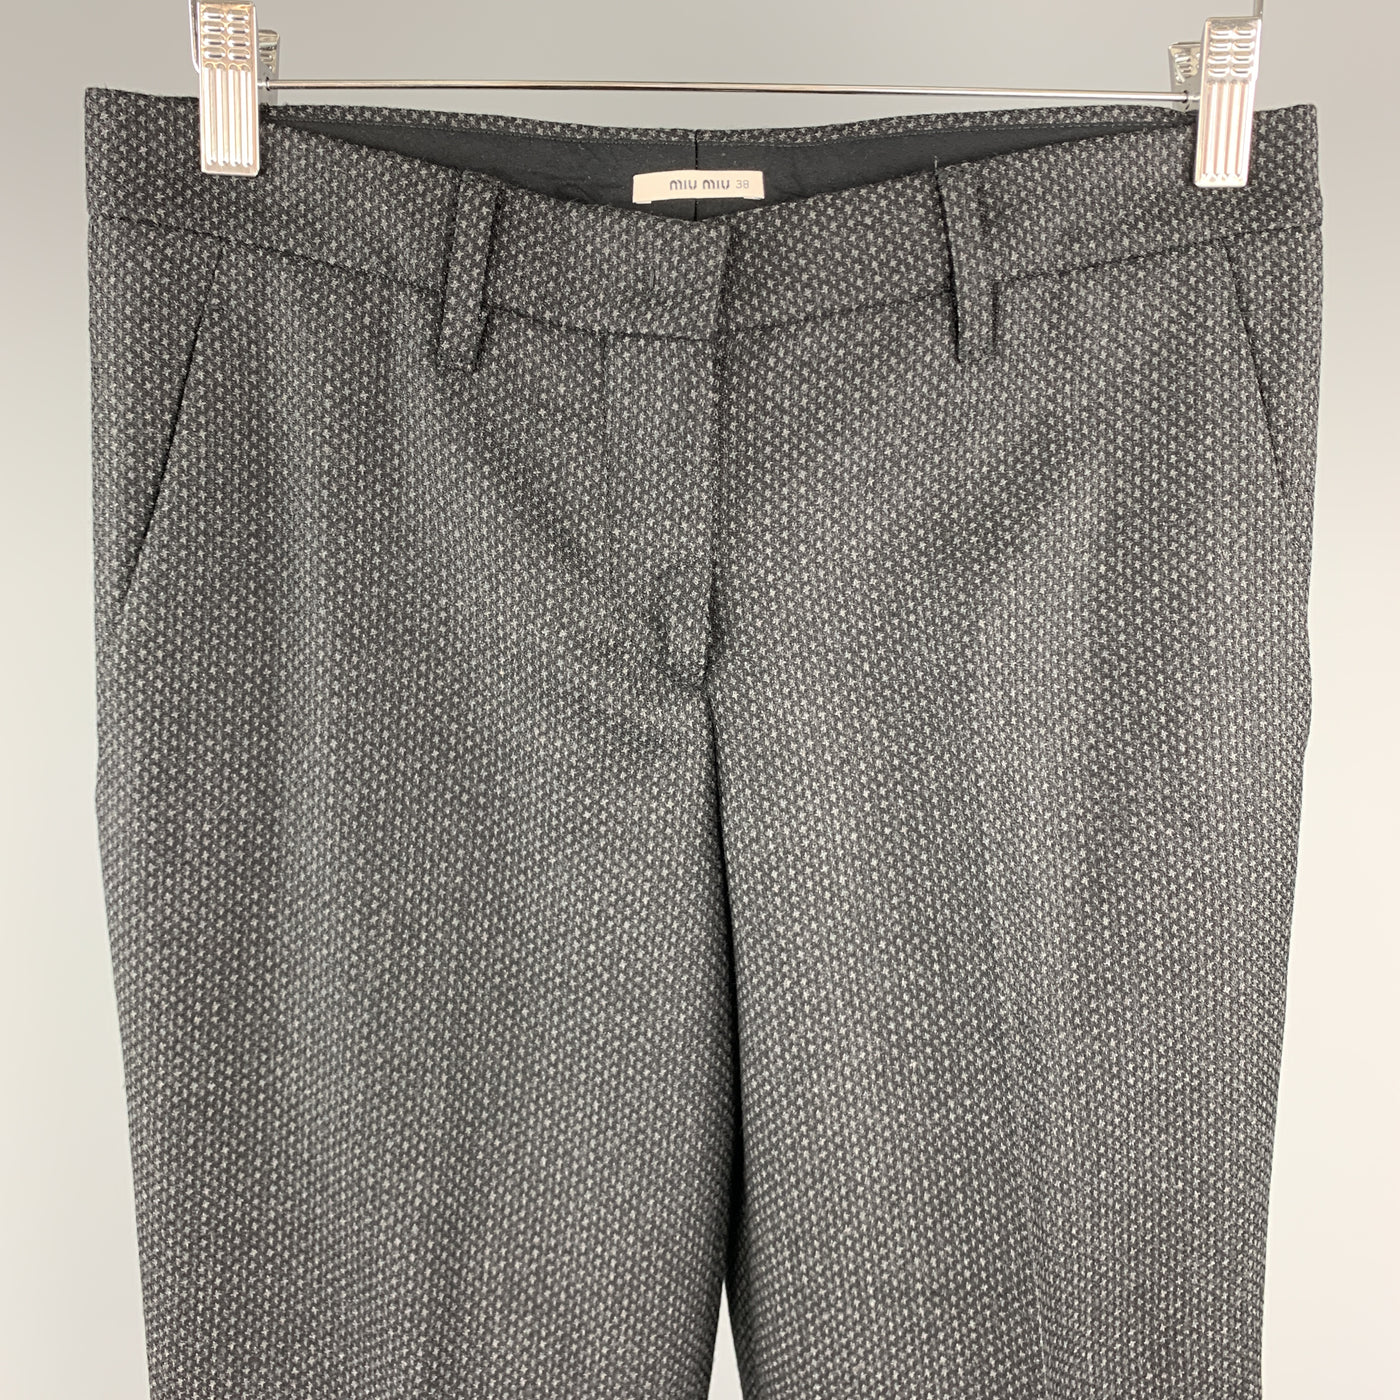 MIU MIU Size 2 Grey Houndstooth Wool Dress Pants